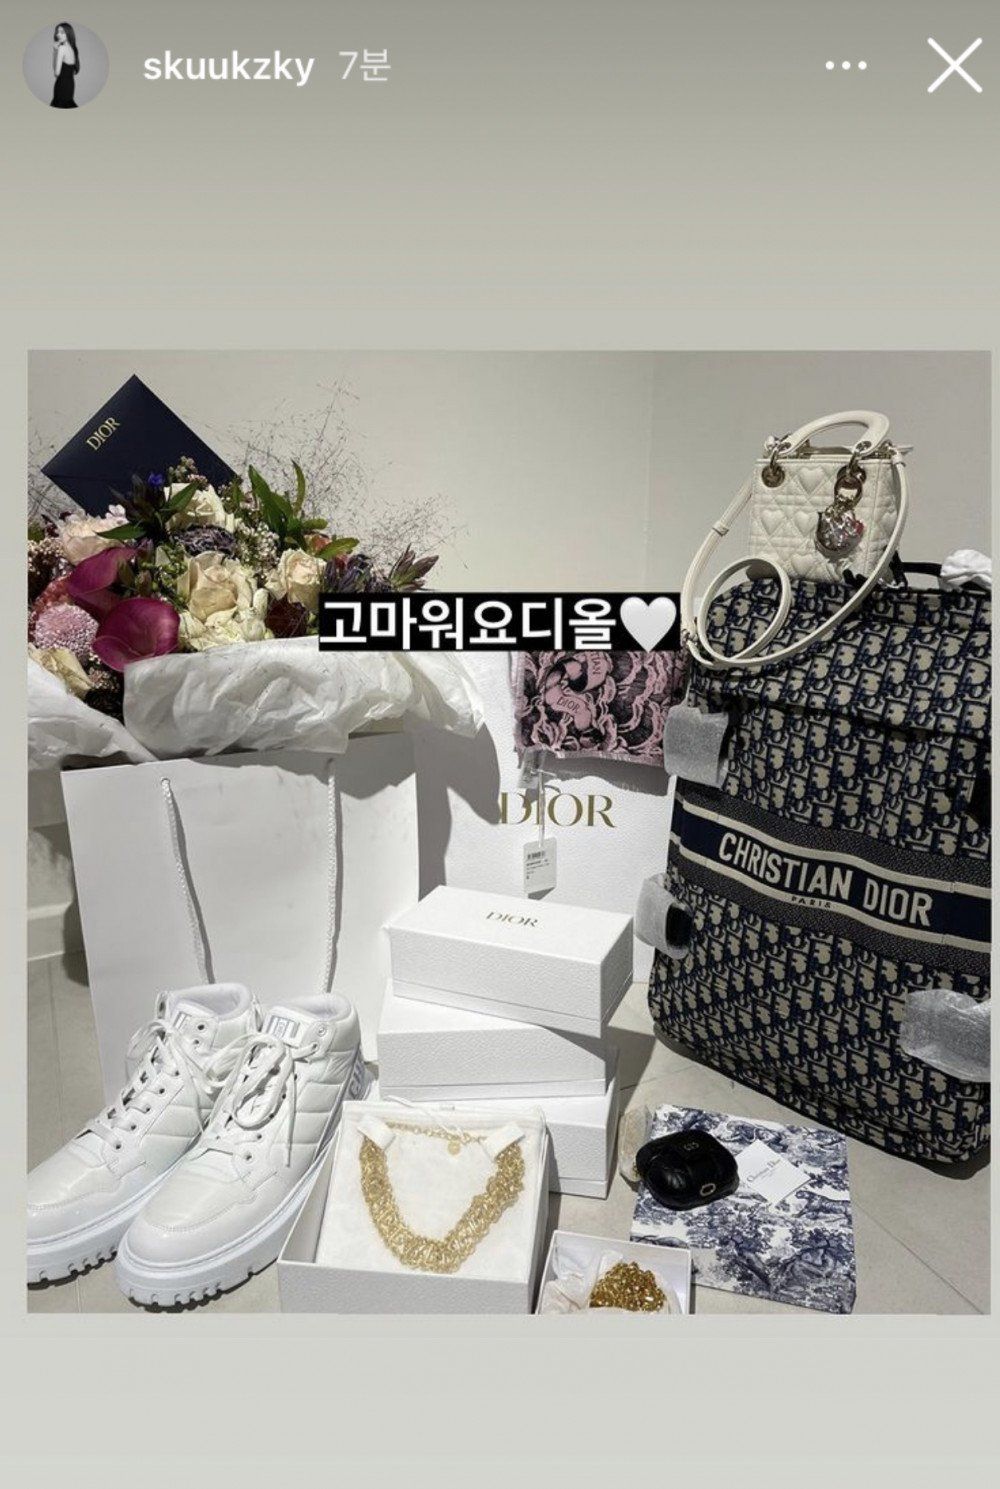 postingan Instagram story Suzy yang memperlihatkan hadiah unlangtahun dari Dior